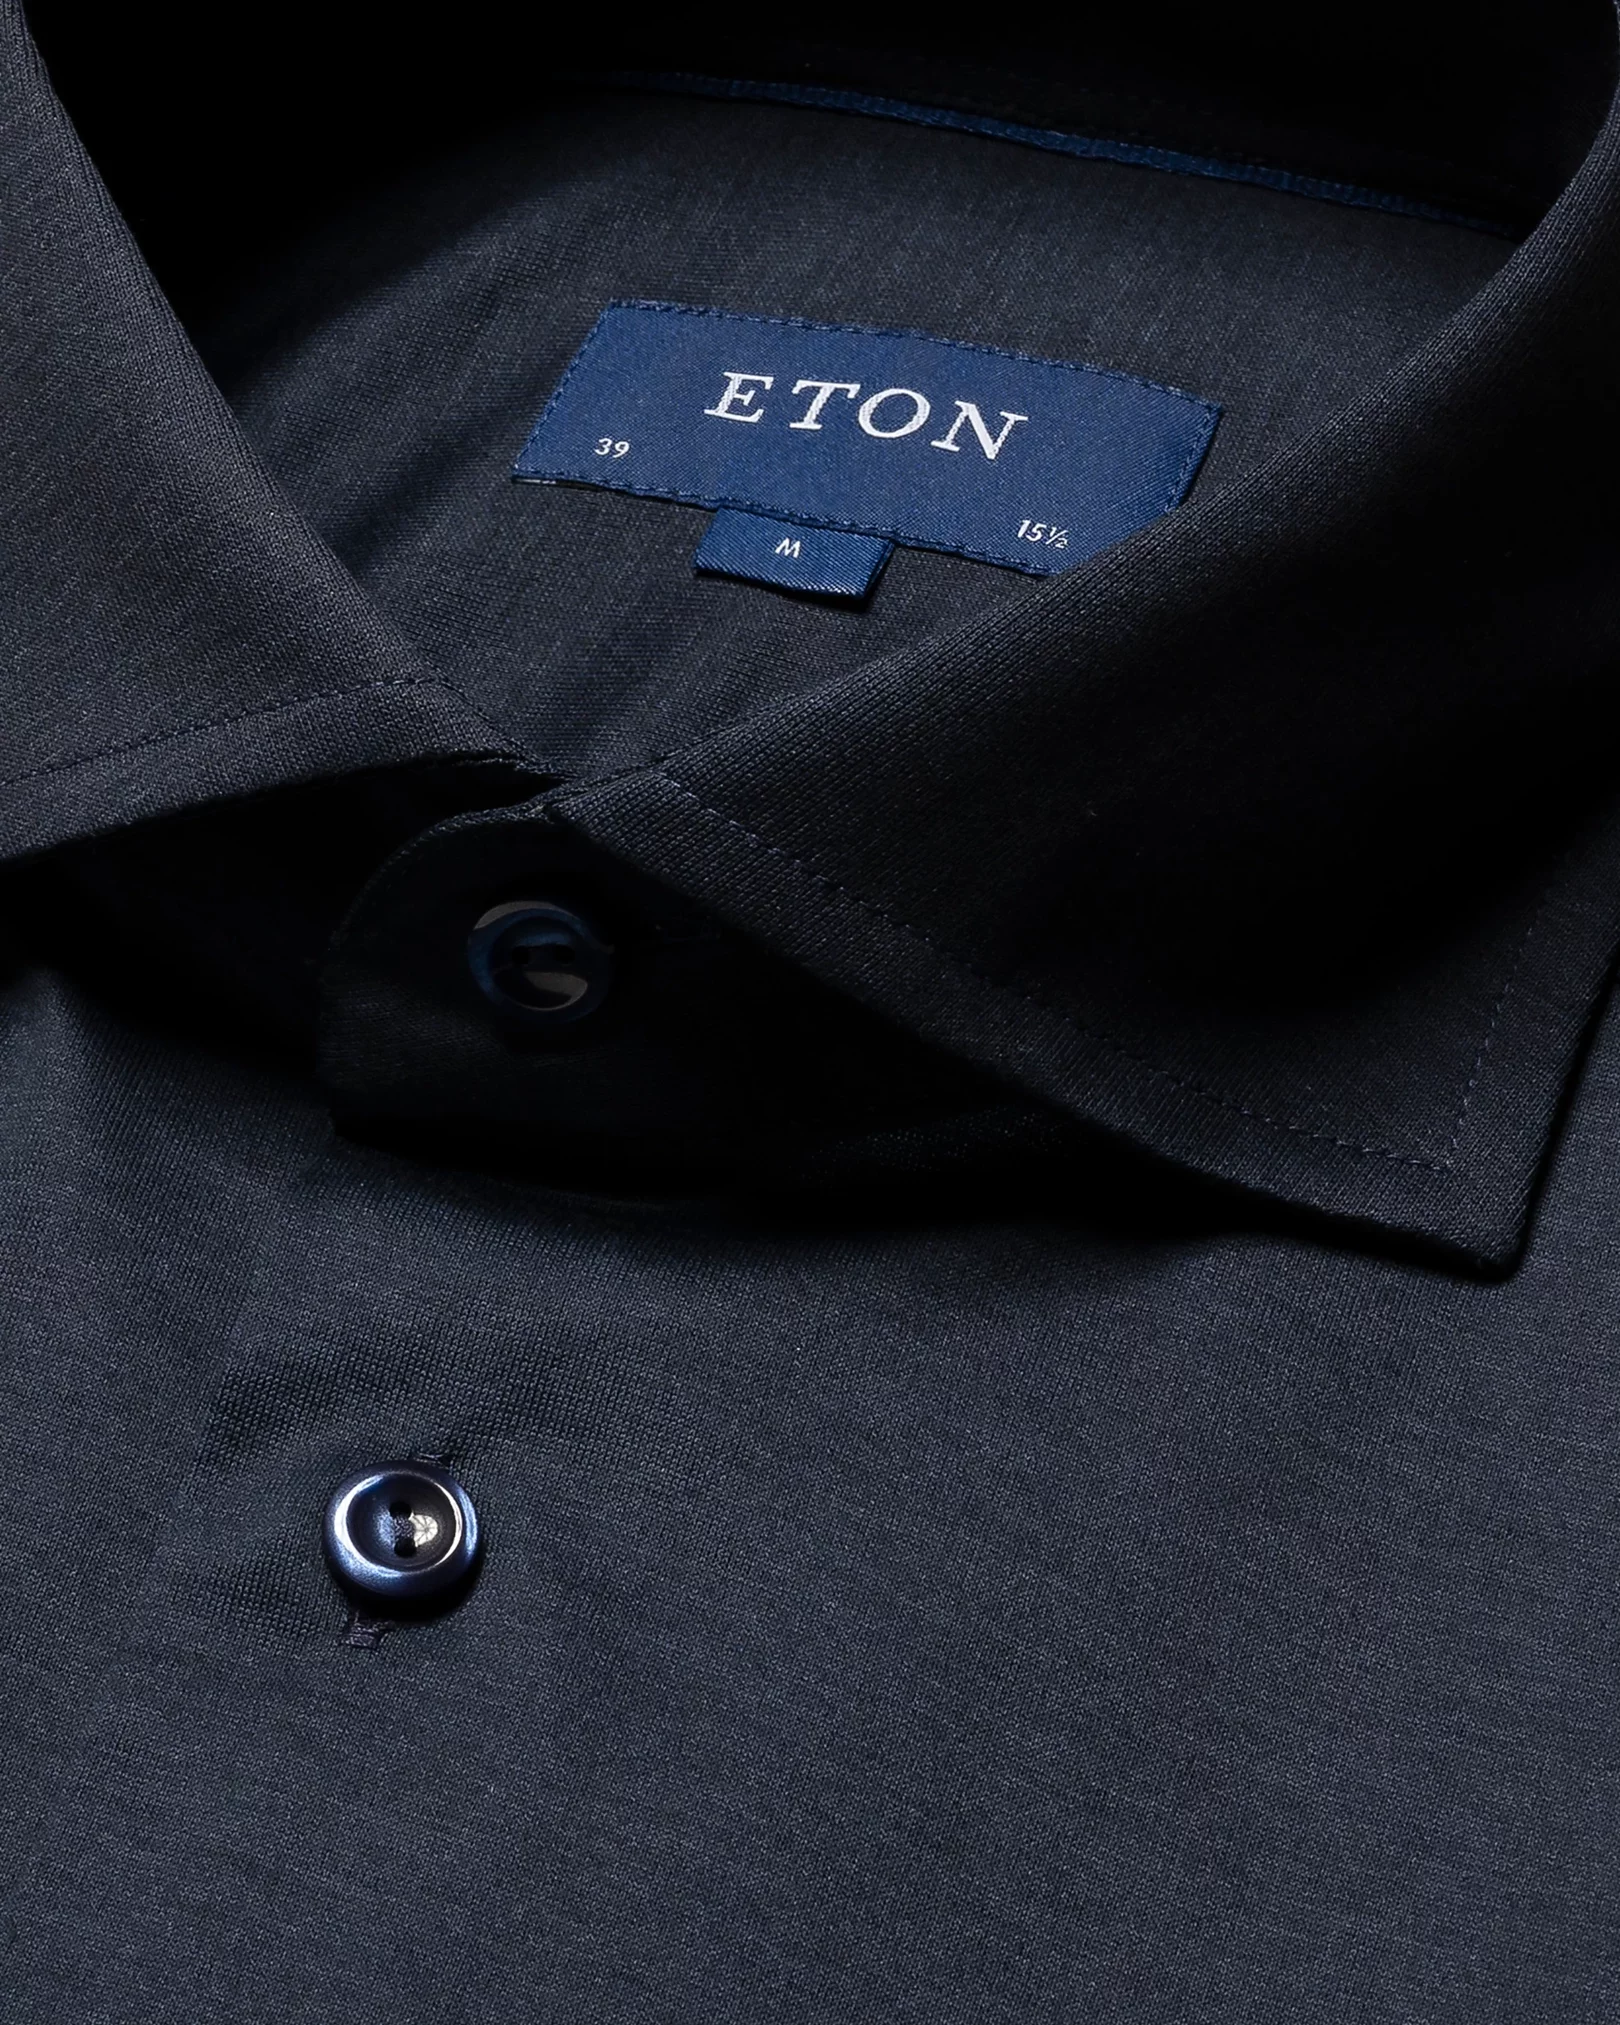 Eton - navy blue single jersey